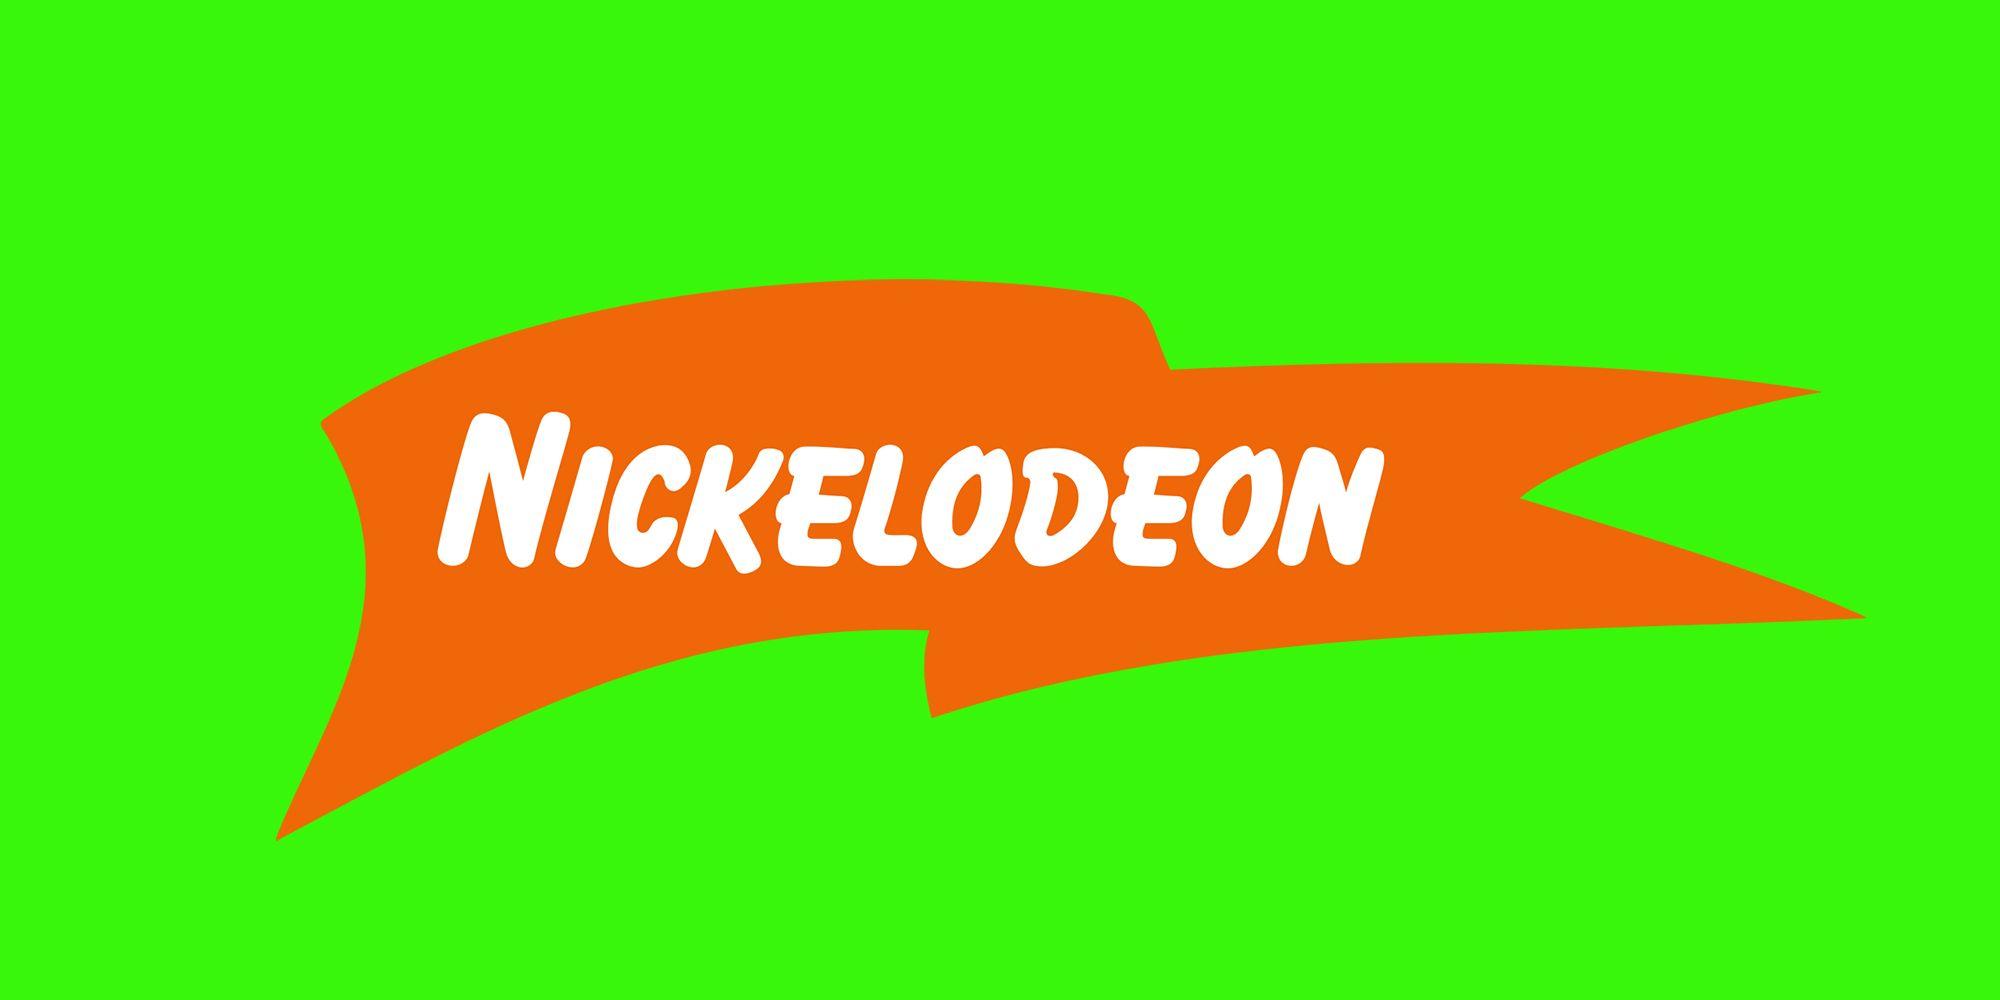 Nicksplat Logo - Nickelodeon Reveals 'NickSplat' Streaming Service